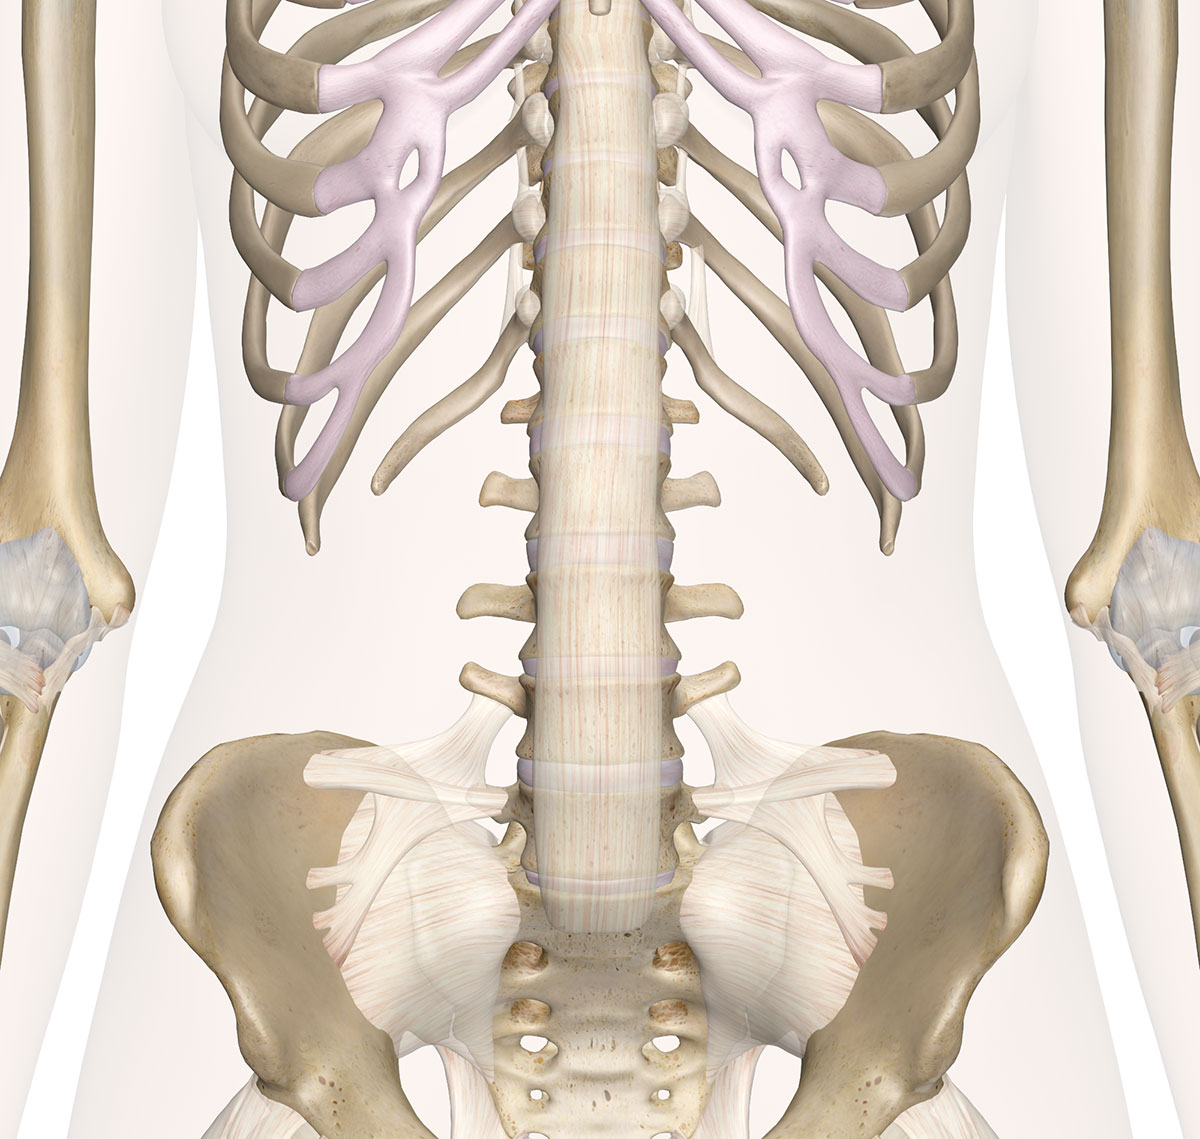 Eo là khoảng hở giữa xương sườn và xương chậu. Khoảng hở càng lớn thì eo càng bé và ngược lại